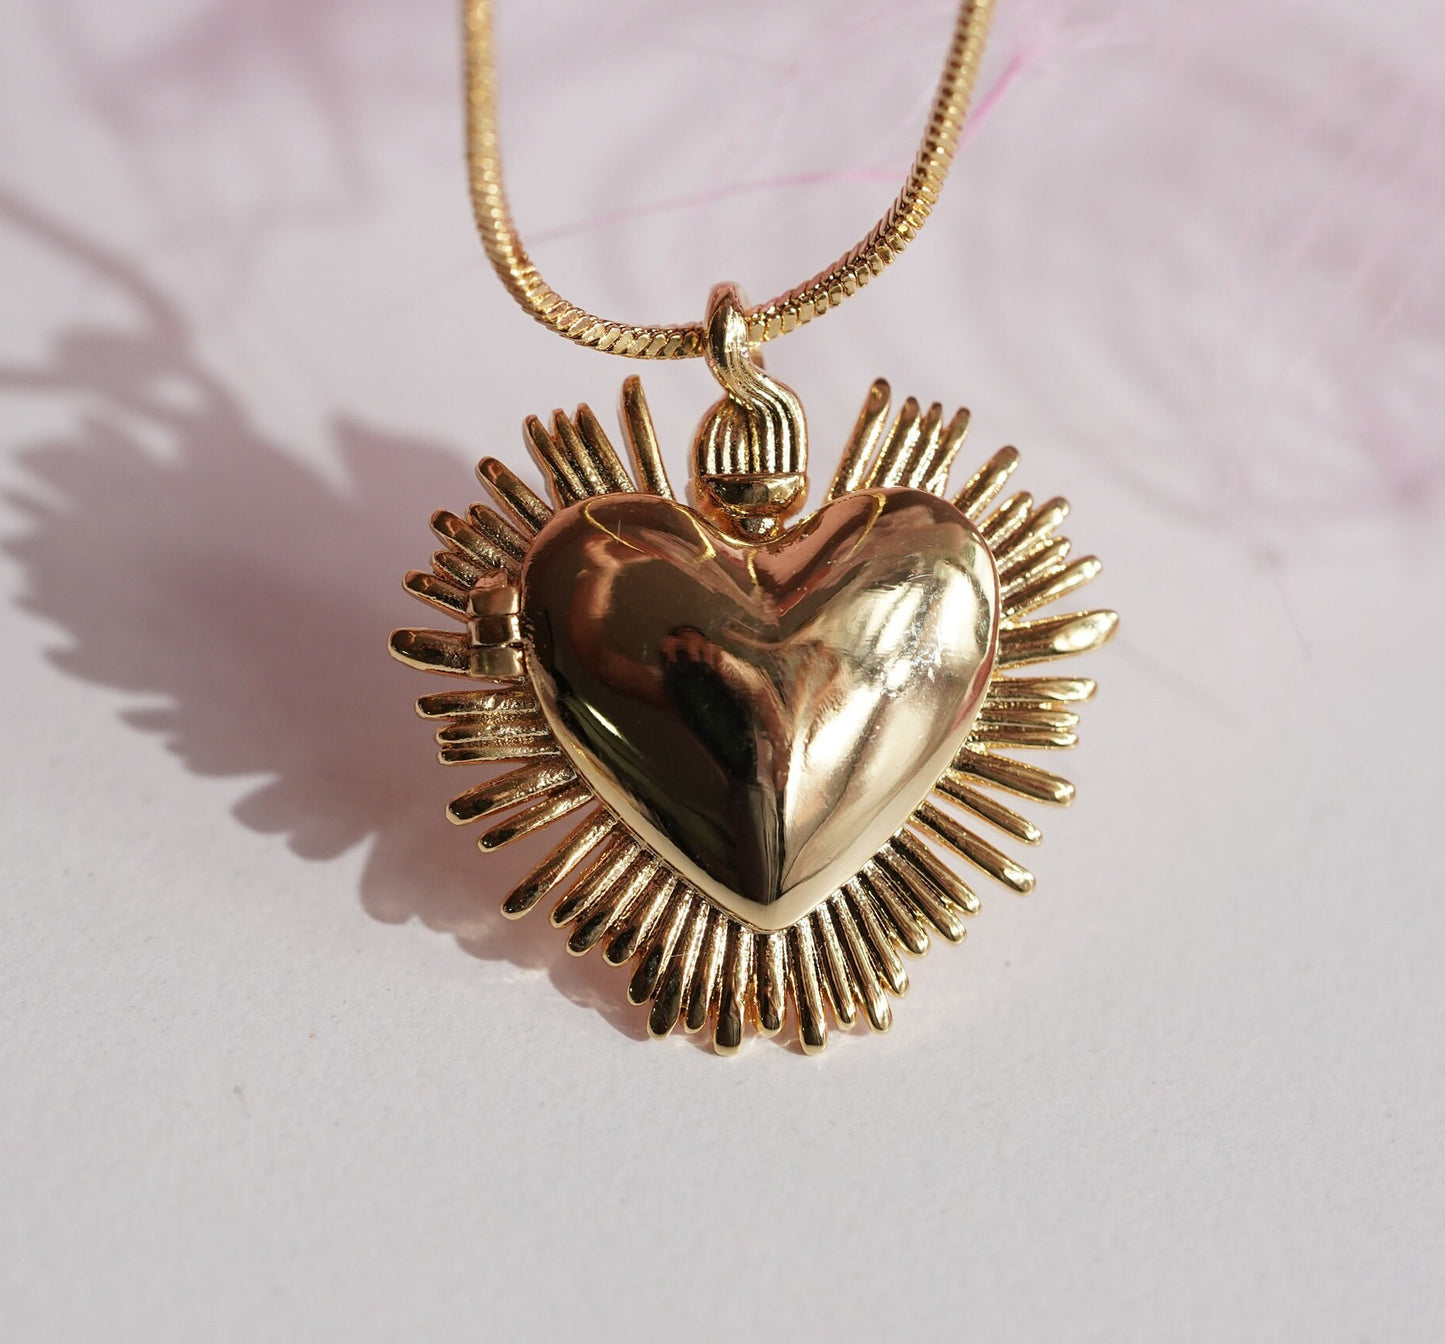 De Una Vez Necklace -Selena Gomez Necklace - Sacred Heart Necklace -Heart Locket Necklace